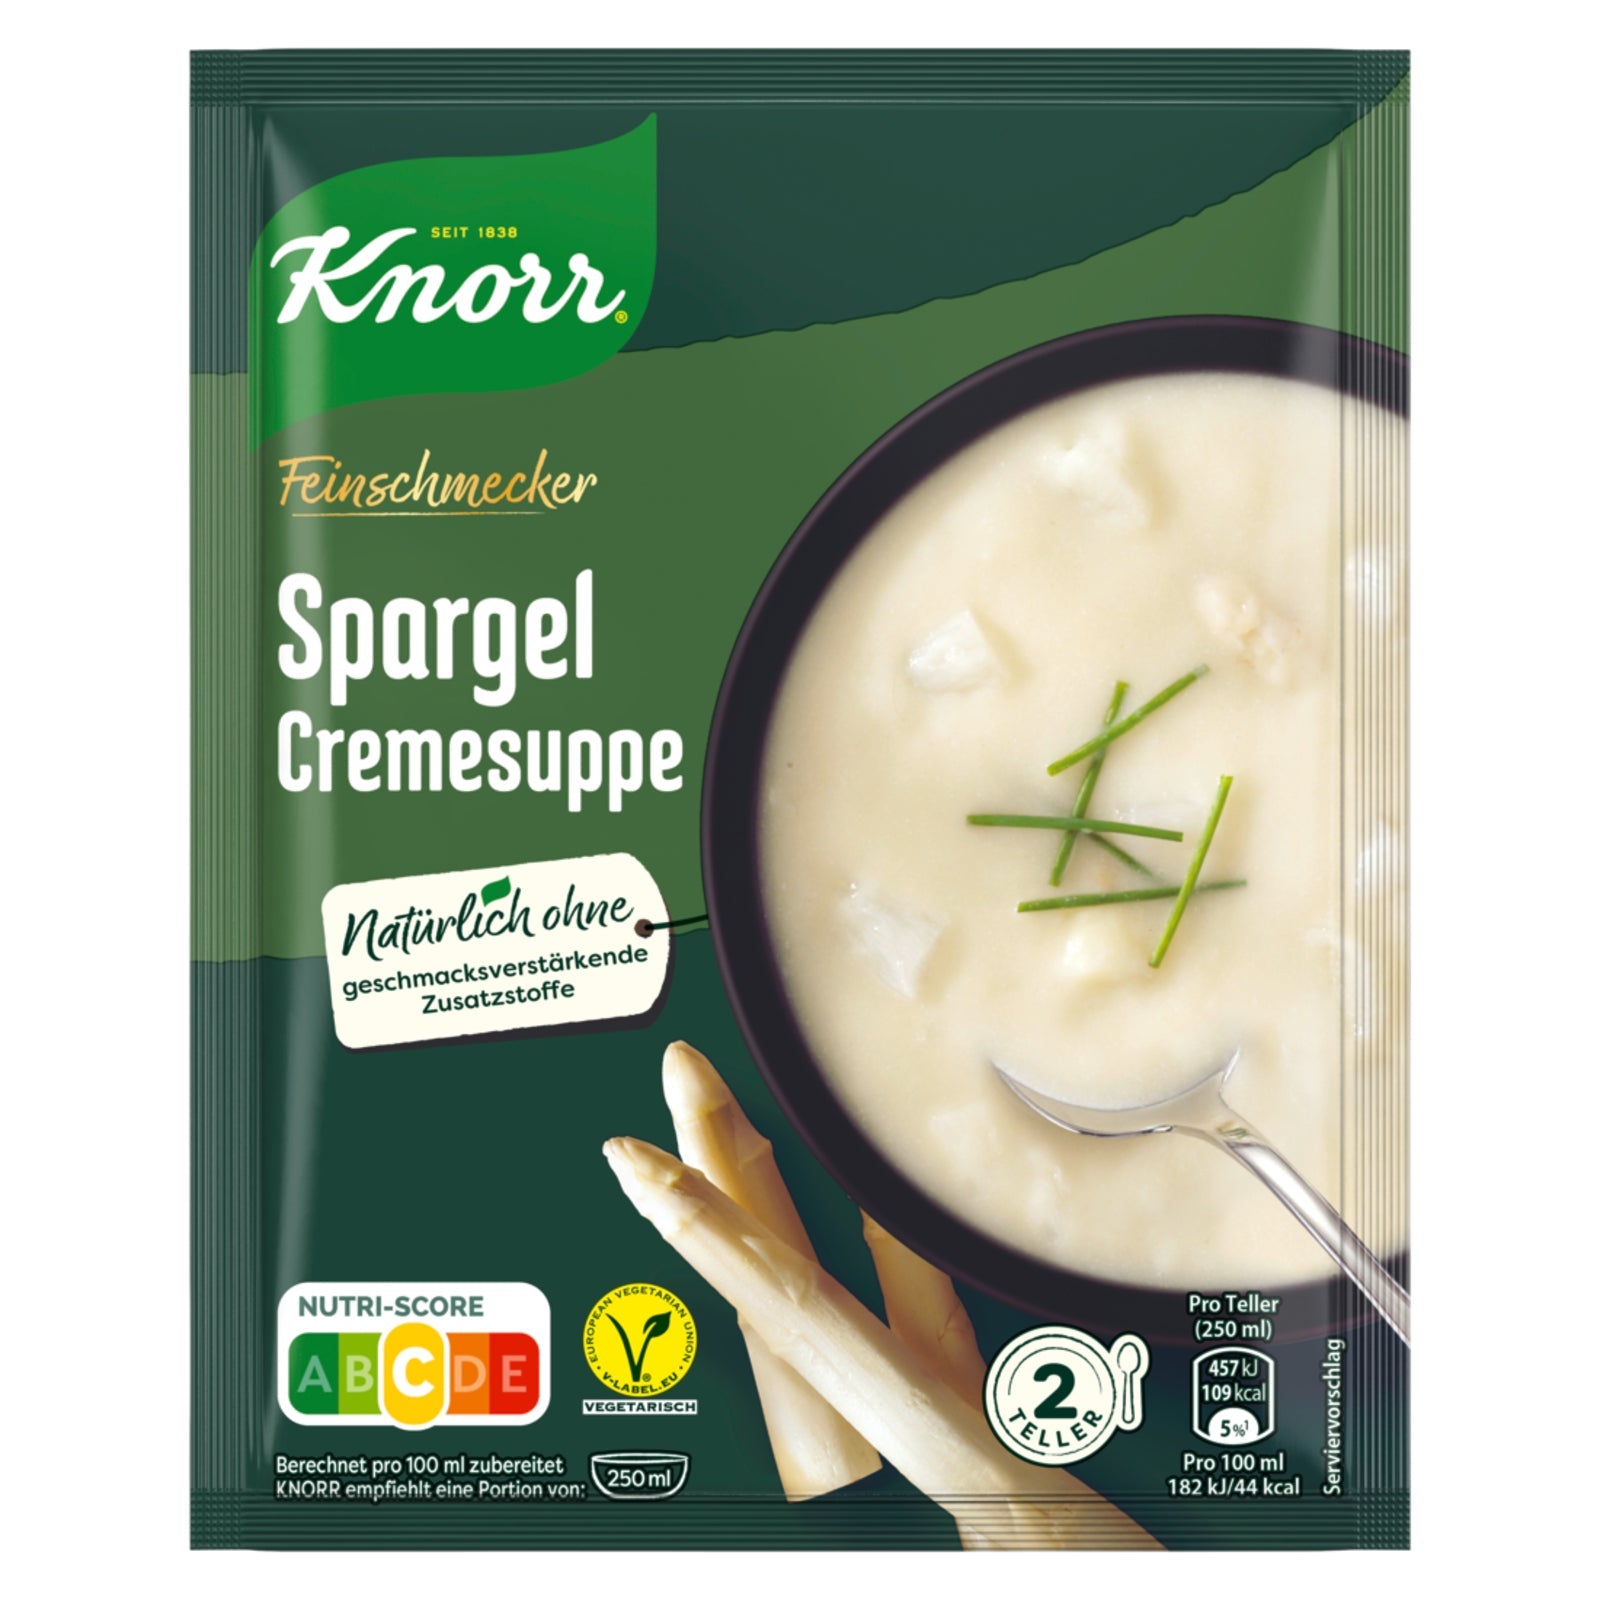 Knorr Feinschmecker Spargel Cremesuppe: besonders cremige Spargelsuppe aus weißem Spargel